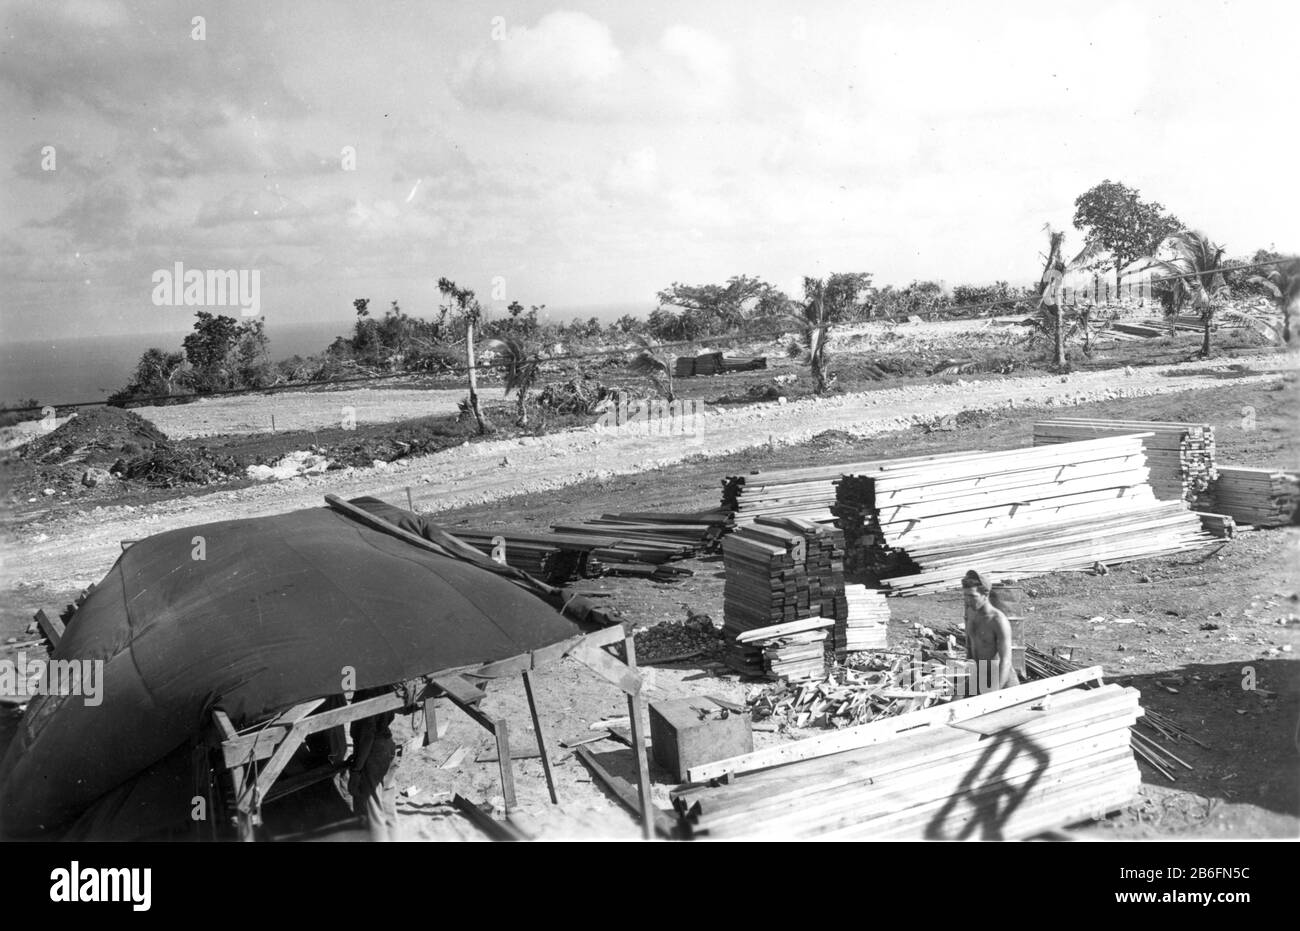 Seabees on Guam, # 3, Nov. 1944. Ein Mann im Lean-to und ein anderer arbeiten im Montagebereich für kommende Gebäude. Beachten Sie die Werkzeuge auf einem Kasten rechts neben dem Lean-to. Dieses Foto zeigt eine neu ausrauchende Schotterstraße vor den zerbrochenen Bäumen hinter den Magen- und Holzhaufen. Das zeigt auch zwei weiß-weiße Bodenbereiche hinter der Straße, die für kommende Gebäude abgestuft wurden. Diese Seabees arbeiten an der Errichtung von Gebäuden für die Gebäude der CINCPAC-Offiziere. Um meine zugehörigen Vintage-Bilder zu sehen, suchen Sie nach Prestor Vintage WW II Stockfoto